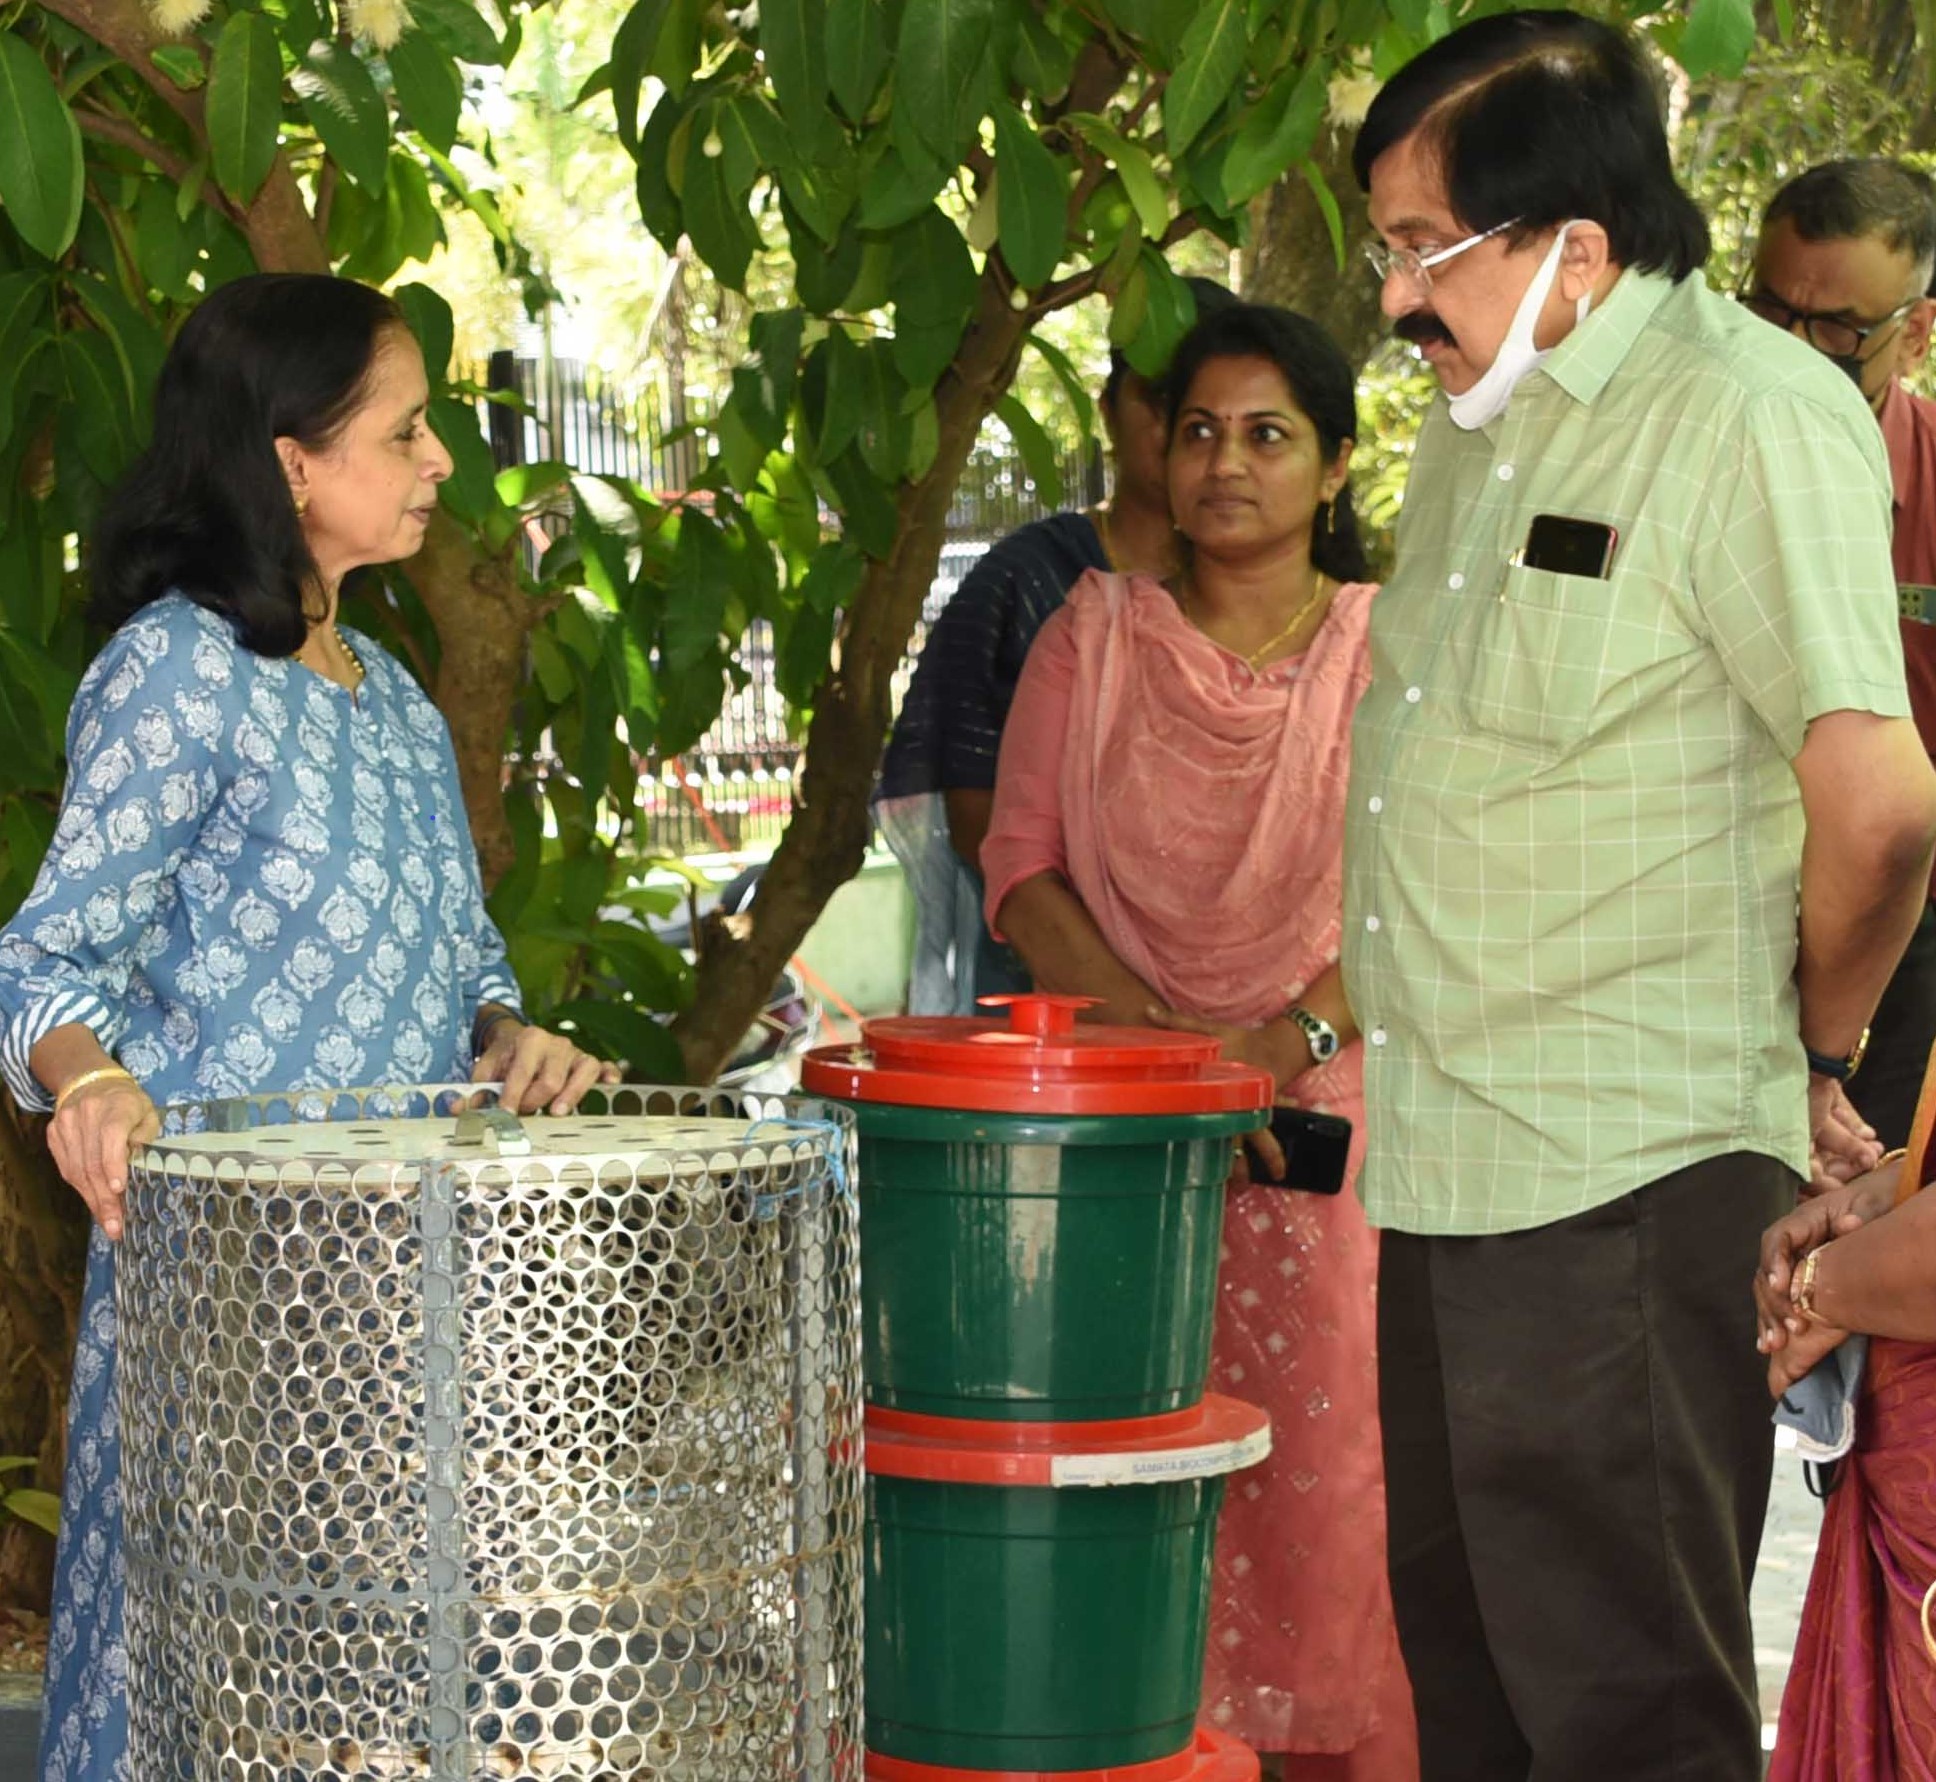 Change in behaviour necessary for effective waste management: workshop